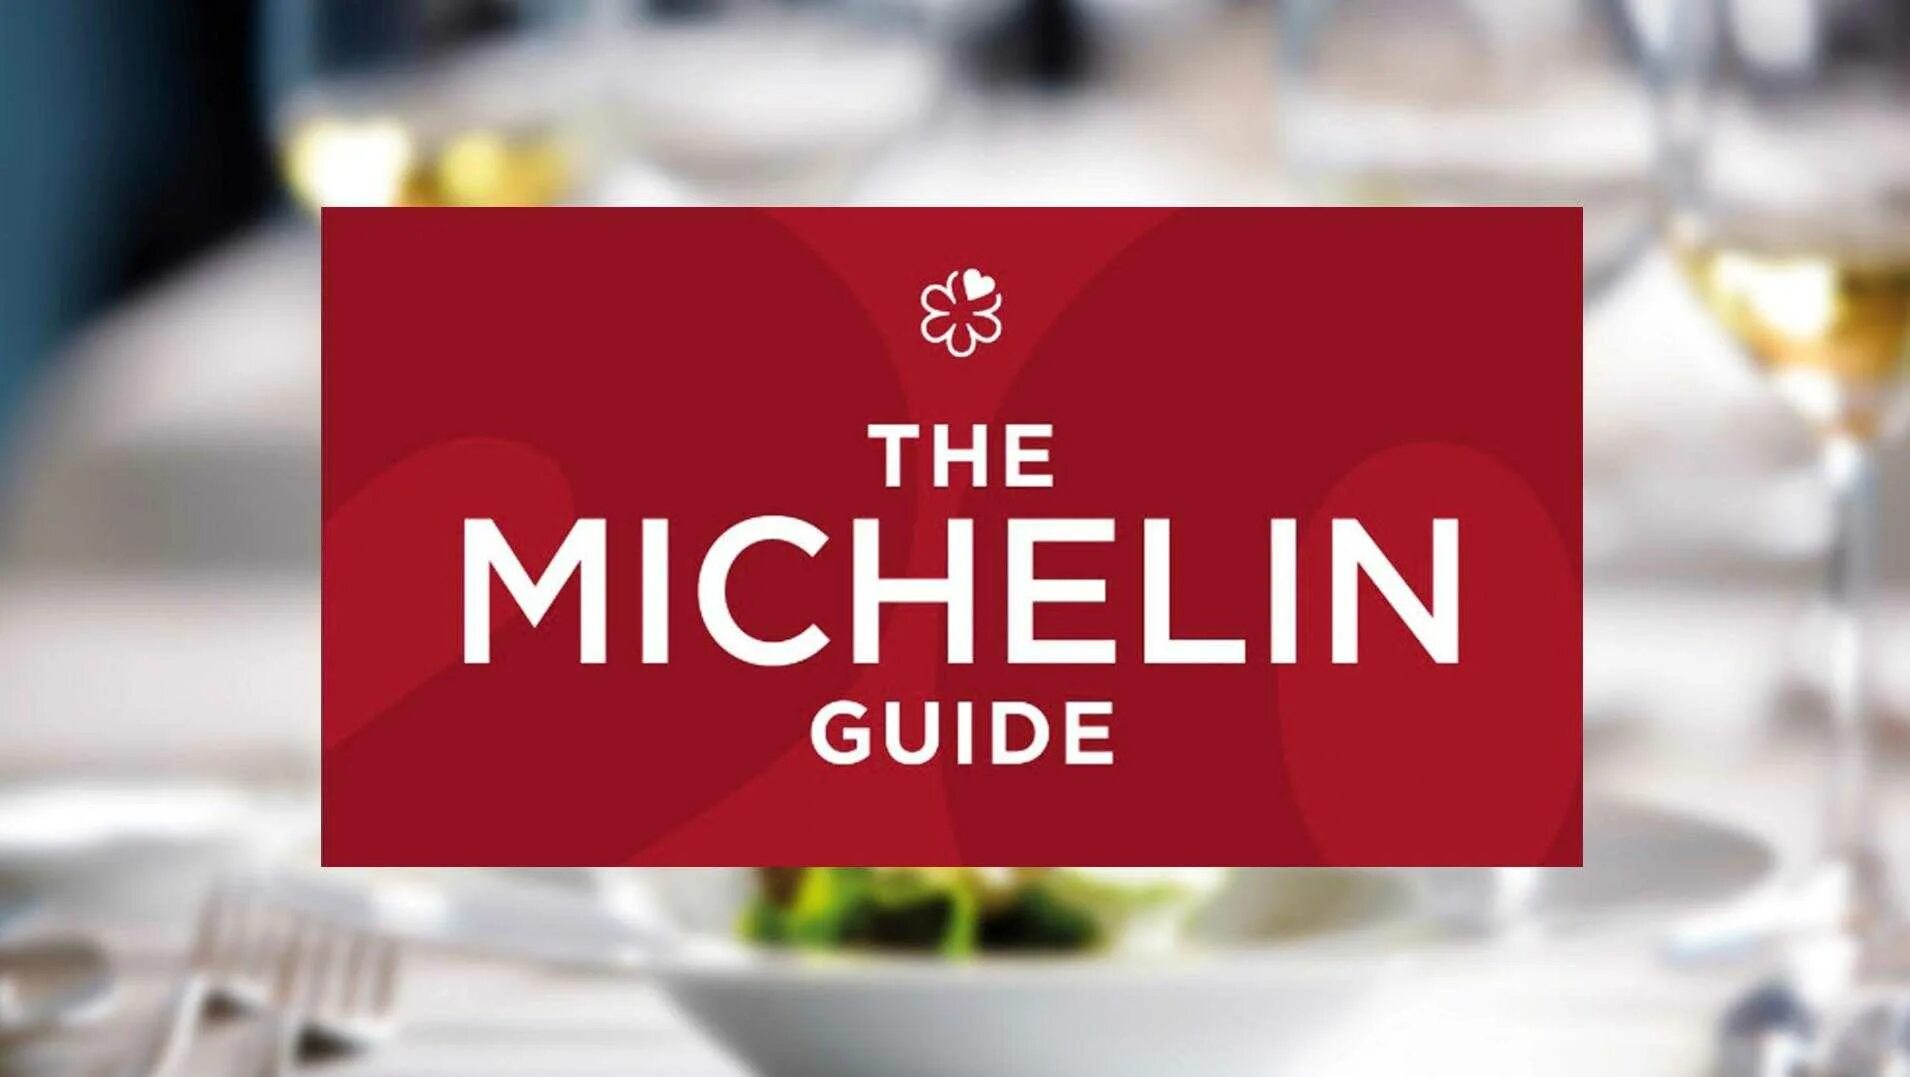 Первая звезда мишлен. Michelin Guide 2021. Красный гид ресторан Москва Мишлен. Guide Michelin 1900. Звезда Мишлен.